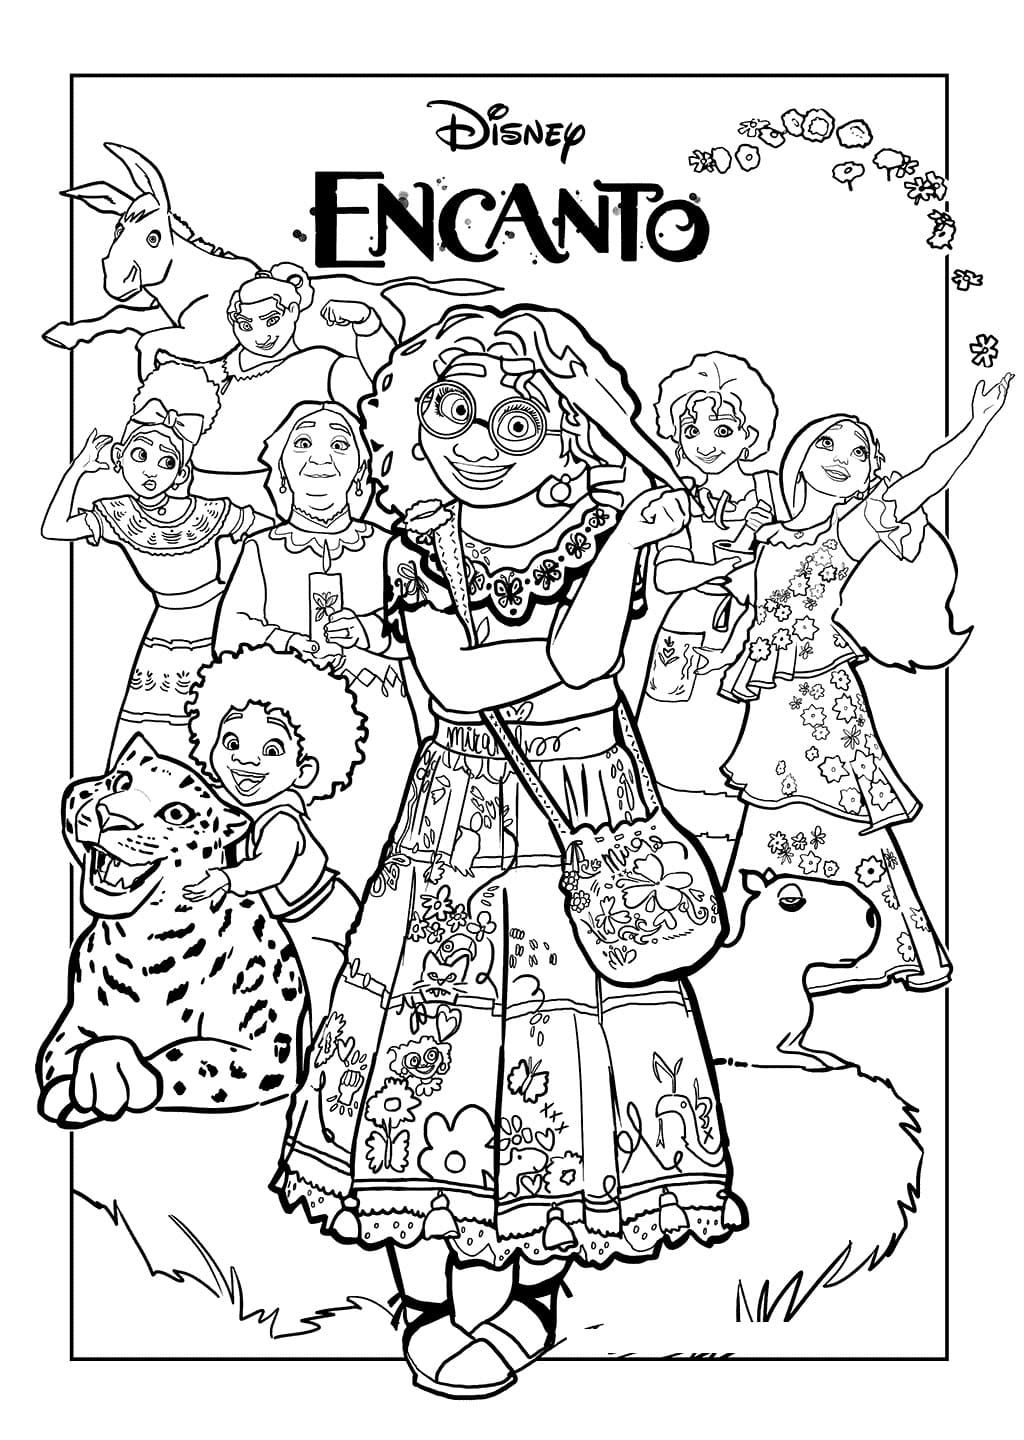 Karakterer fra Encanto fargelegging